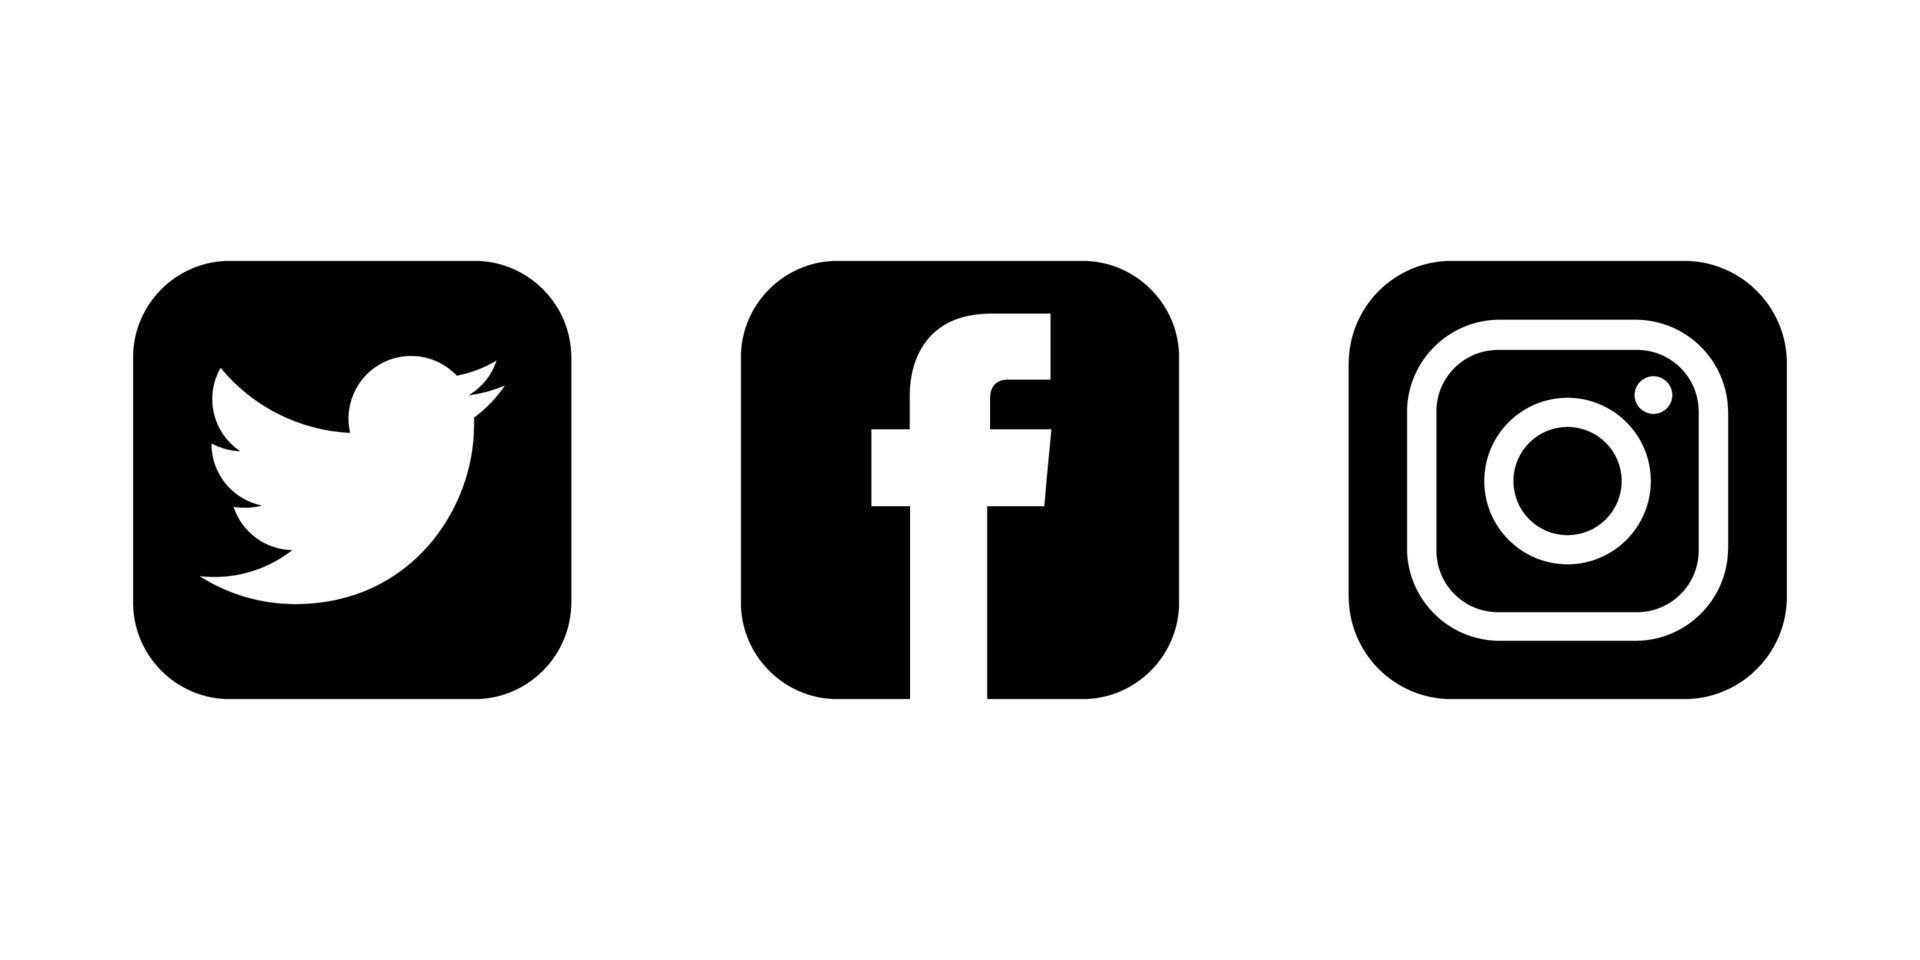 Social-Media-Symbole gesetzt. Facebook Instagram Twitter Logos vektor